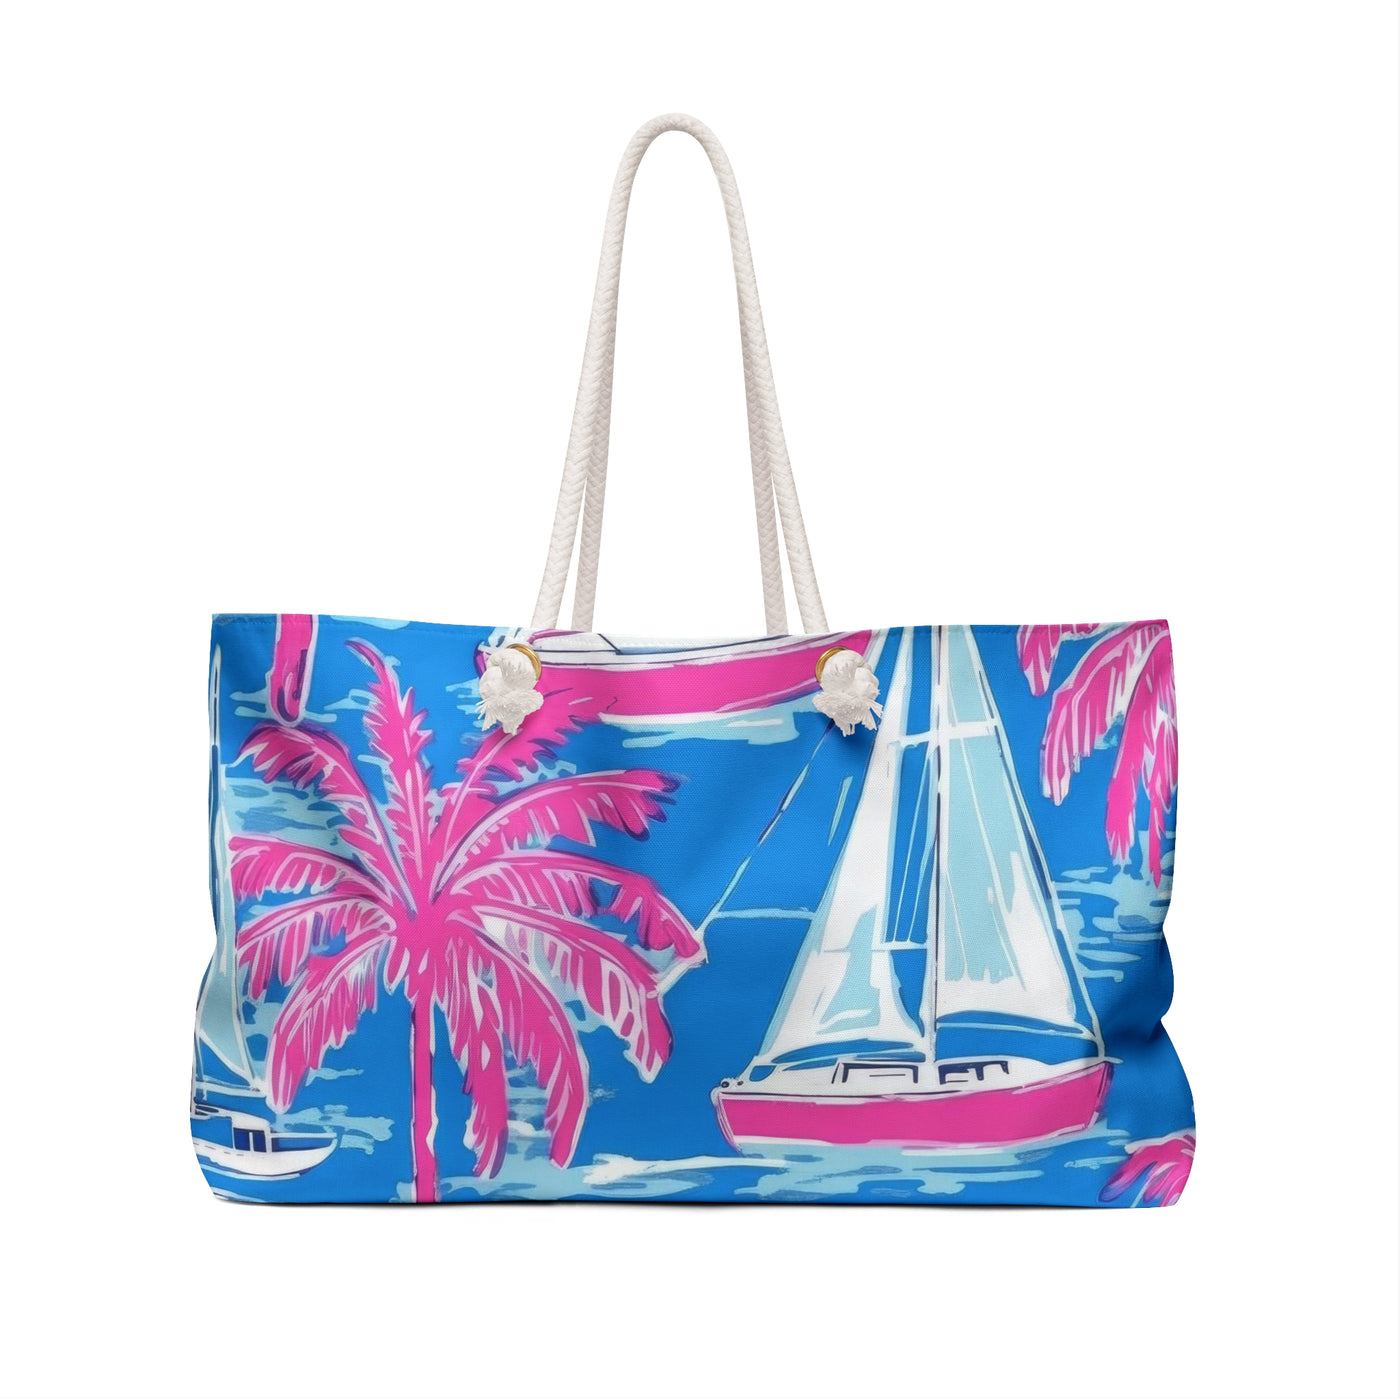 Sailors Paradise Weekender Bag - Coastal Cool - Swimwear and Beachwear - Recycled fabrics